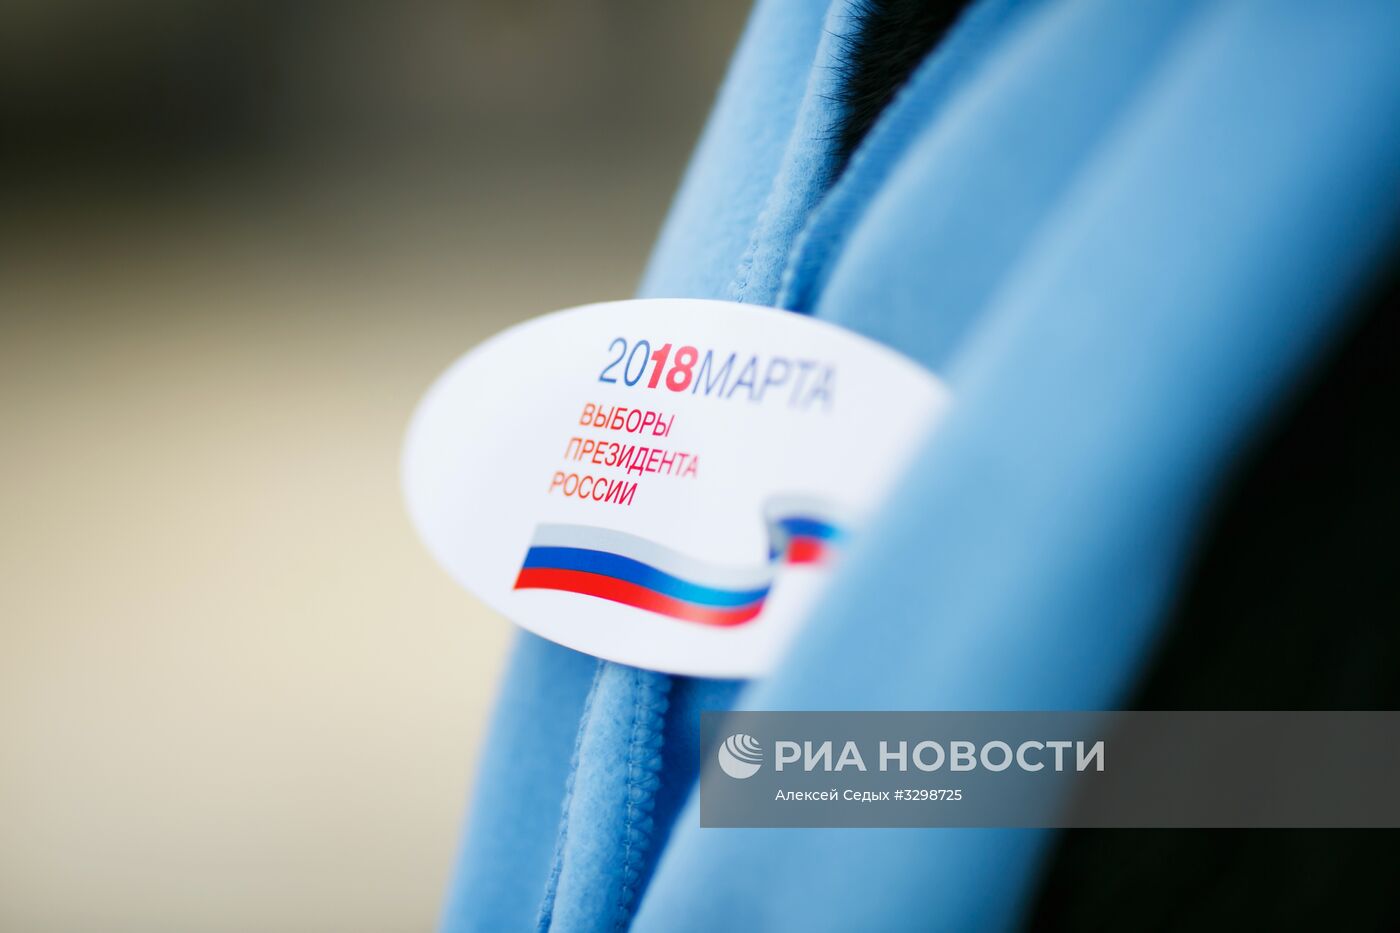 Обход домов членами избирательной комиссии в Волгограде